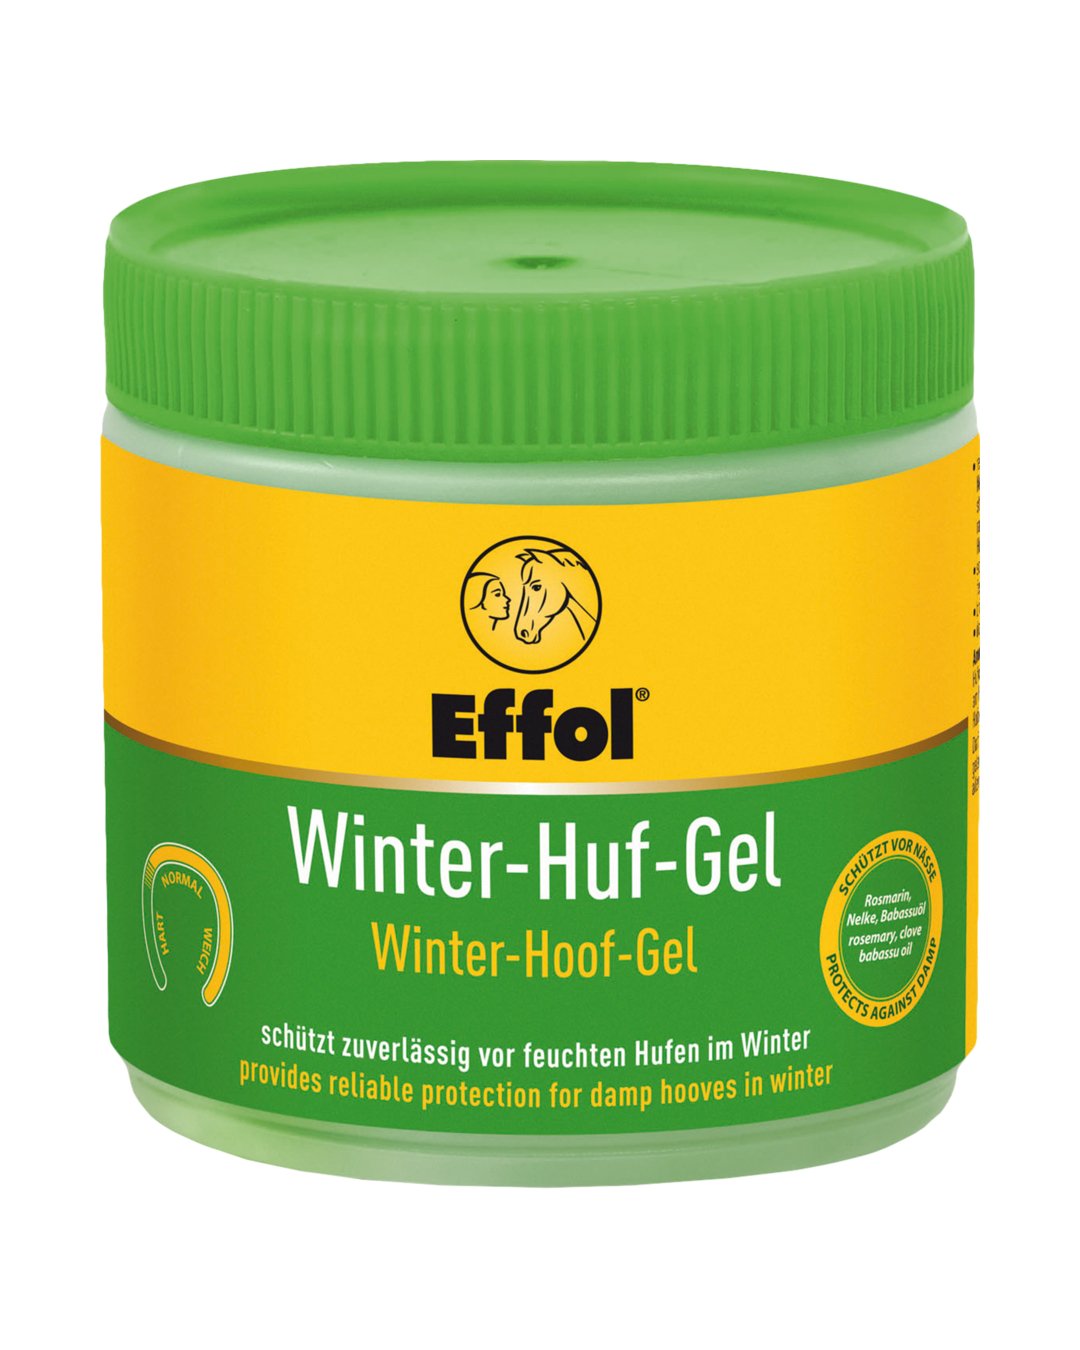 Winter-Huf-Gel